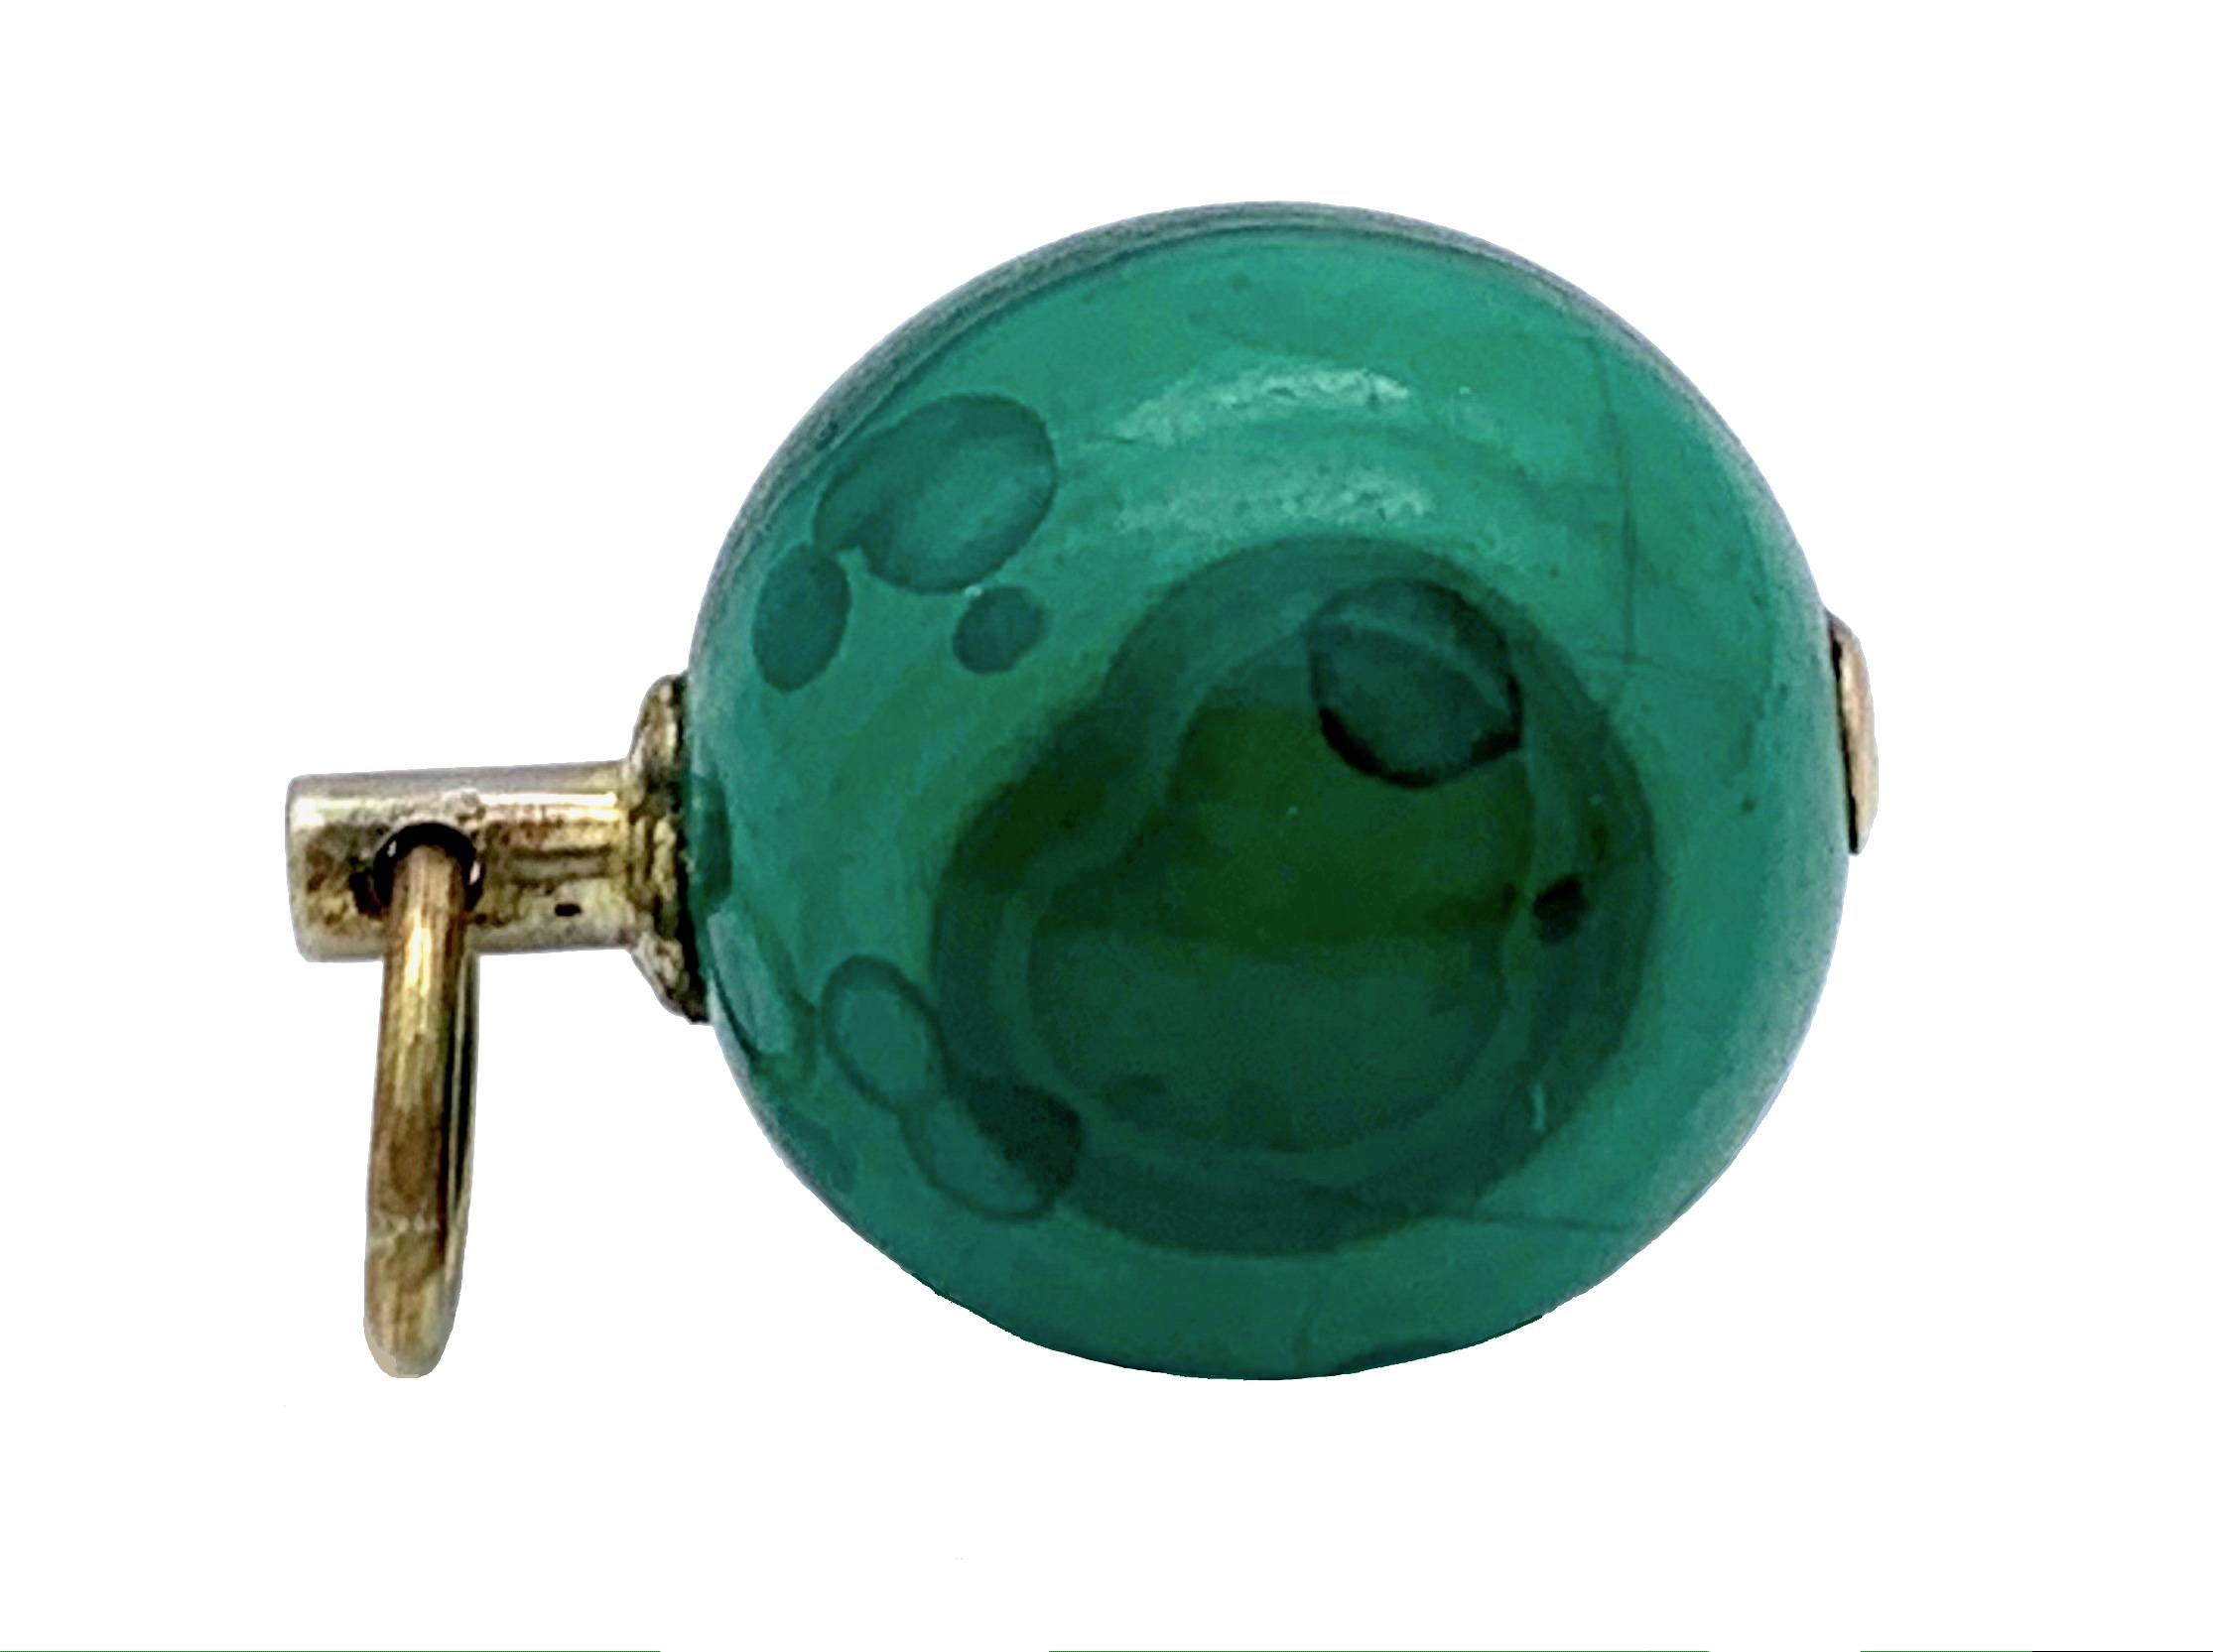 Dieser schöne Uhrenschlüssel in Form einer intensiv grünen Malachitkugel wurde im zweiten Viertel des neunzehnten Jahrhunderts in England gefertigt. Früher war sie ein modisches Accessoire an der Uhrenkette eines georgischen Gentleman.
Heute kann es